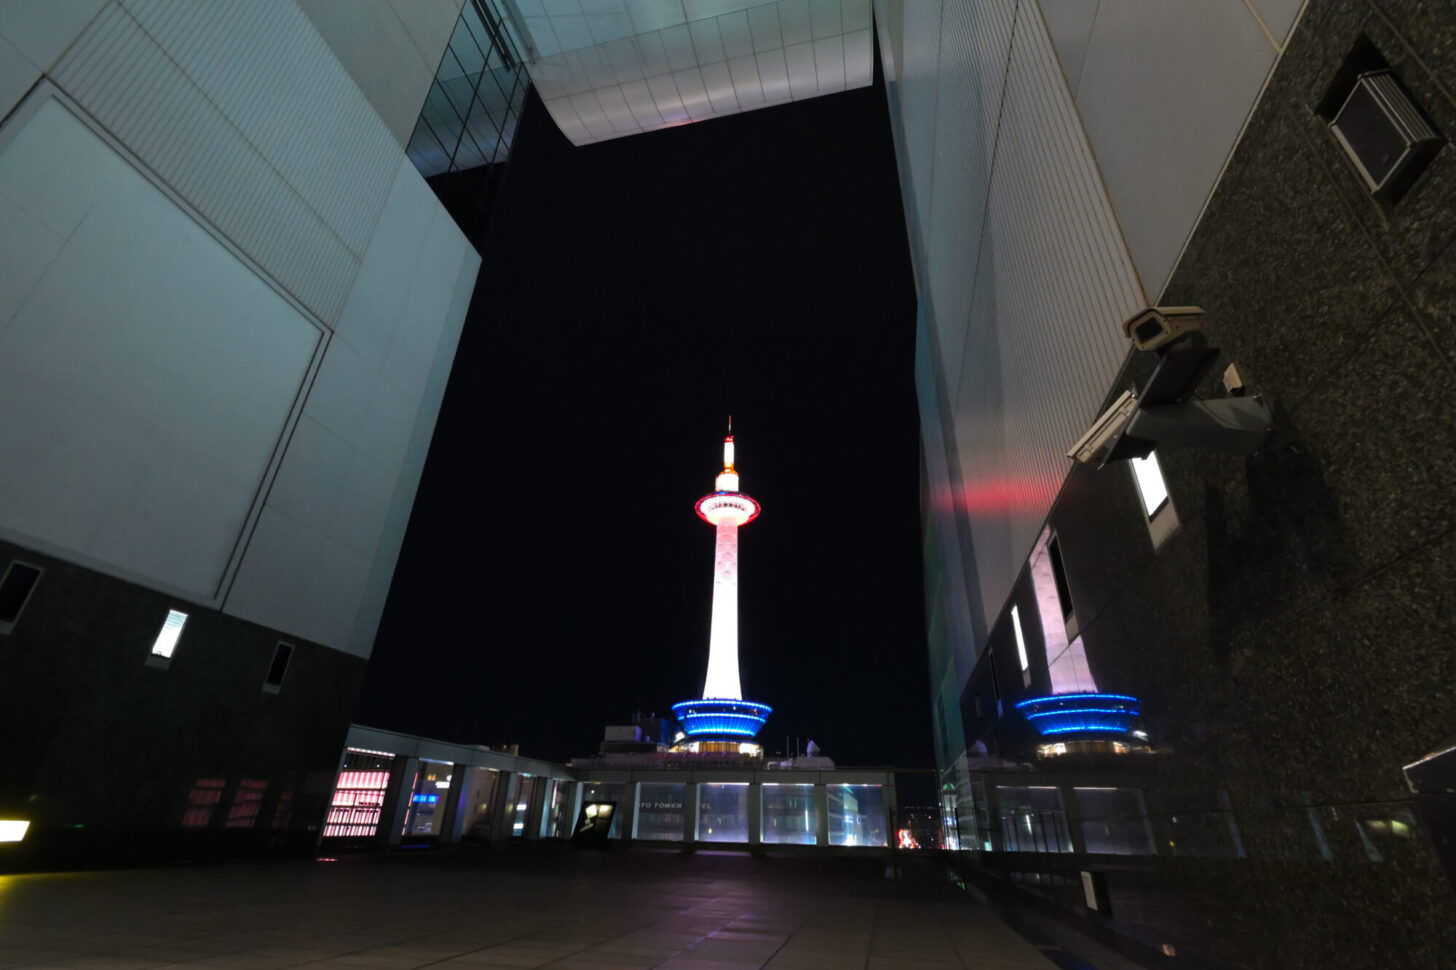 AF-P DX NIKKOR 10-20mm f/4.5-5.6G VRで撮る京都タワー